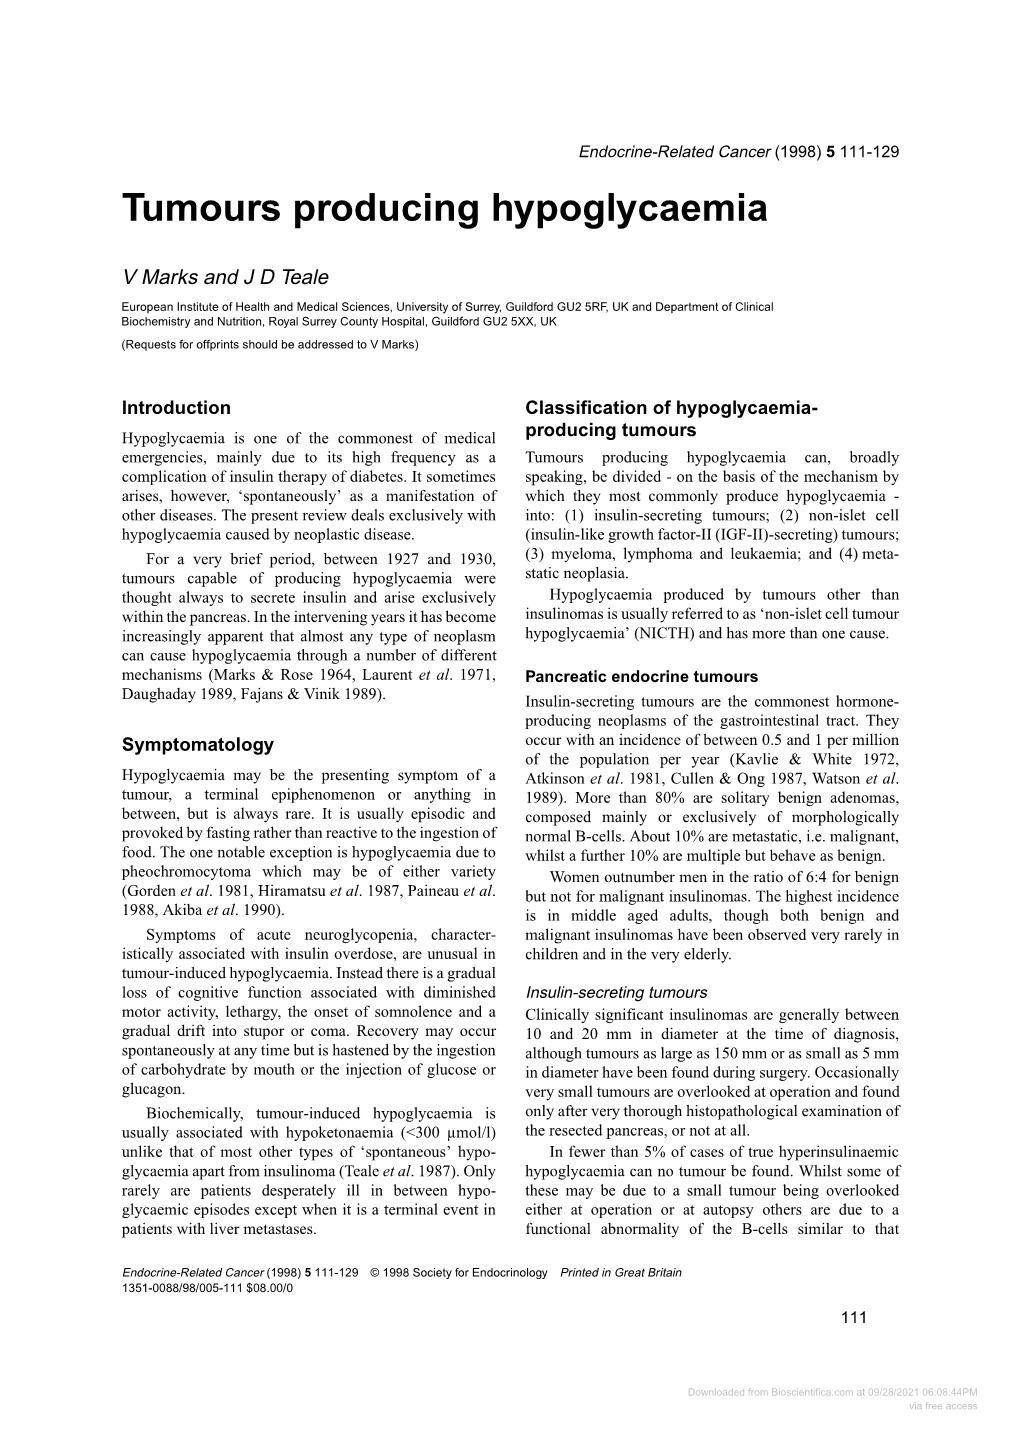 Tumours Producing Hypoglycaemia